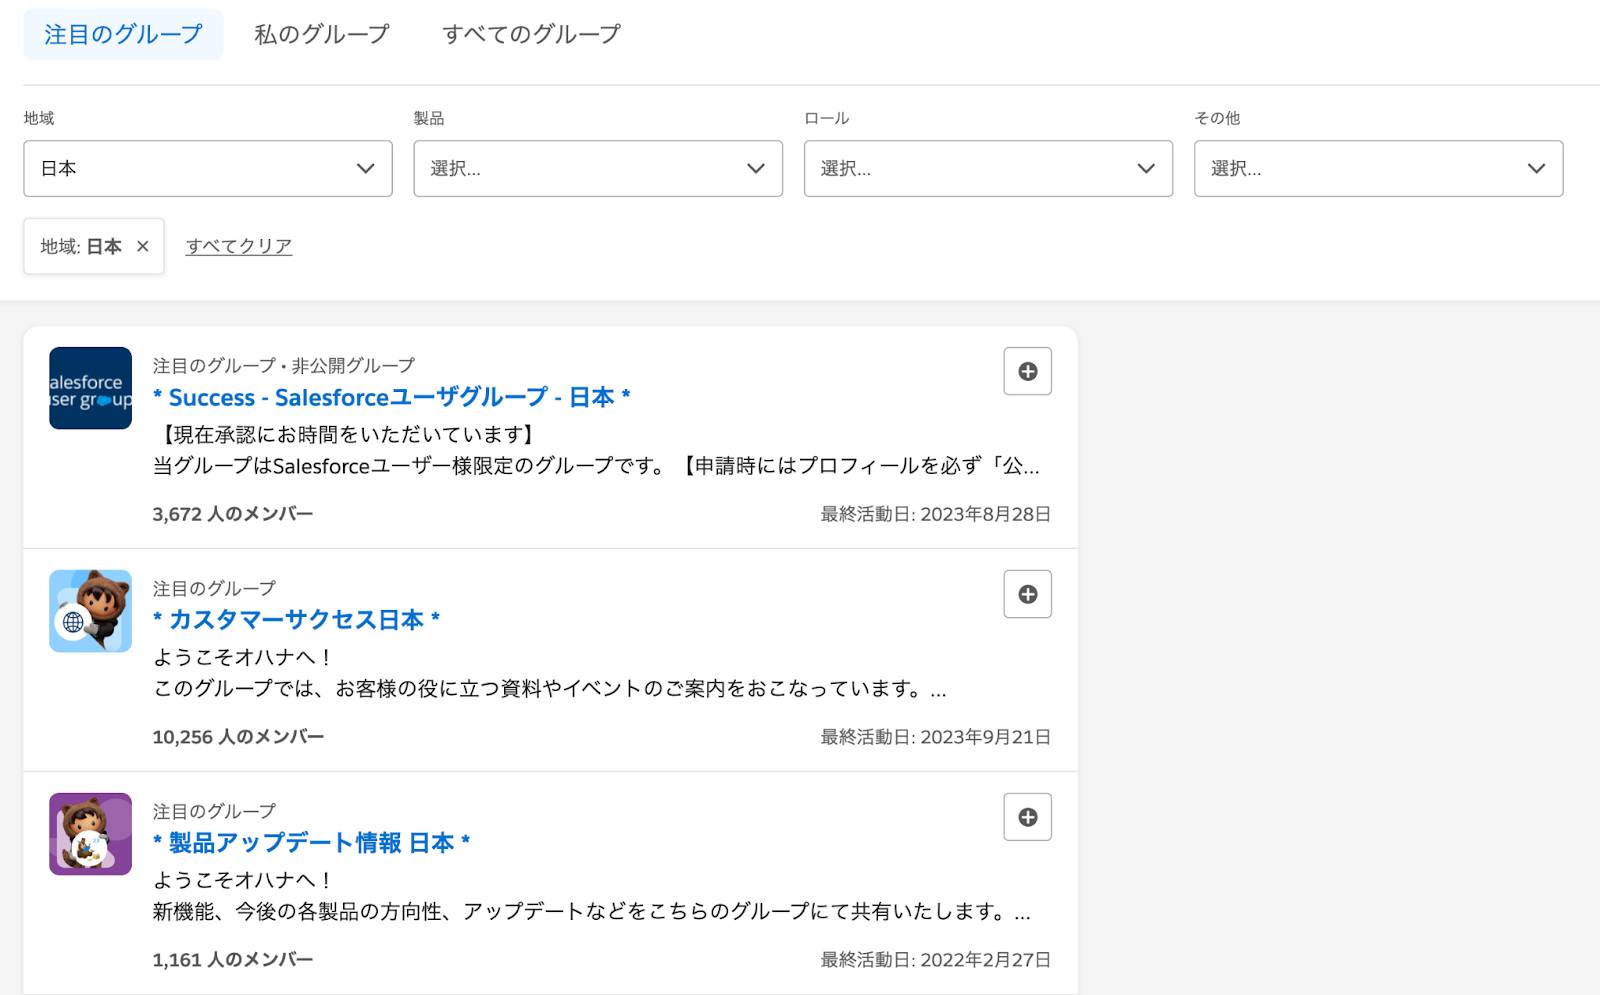 在 Trailblazer Community 精选小组页面上查找日本最受欢迎的 Trailblazer Community 小组。